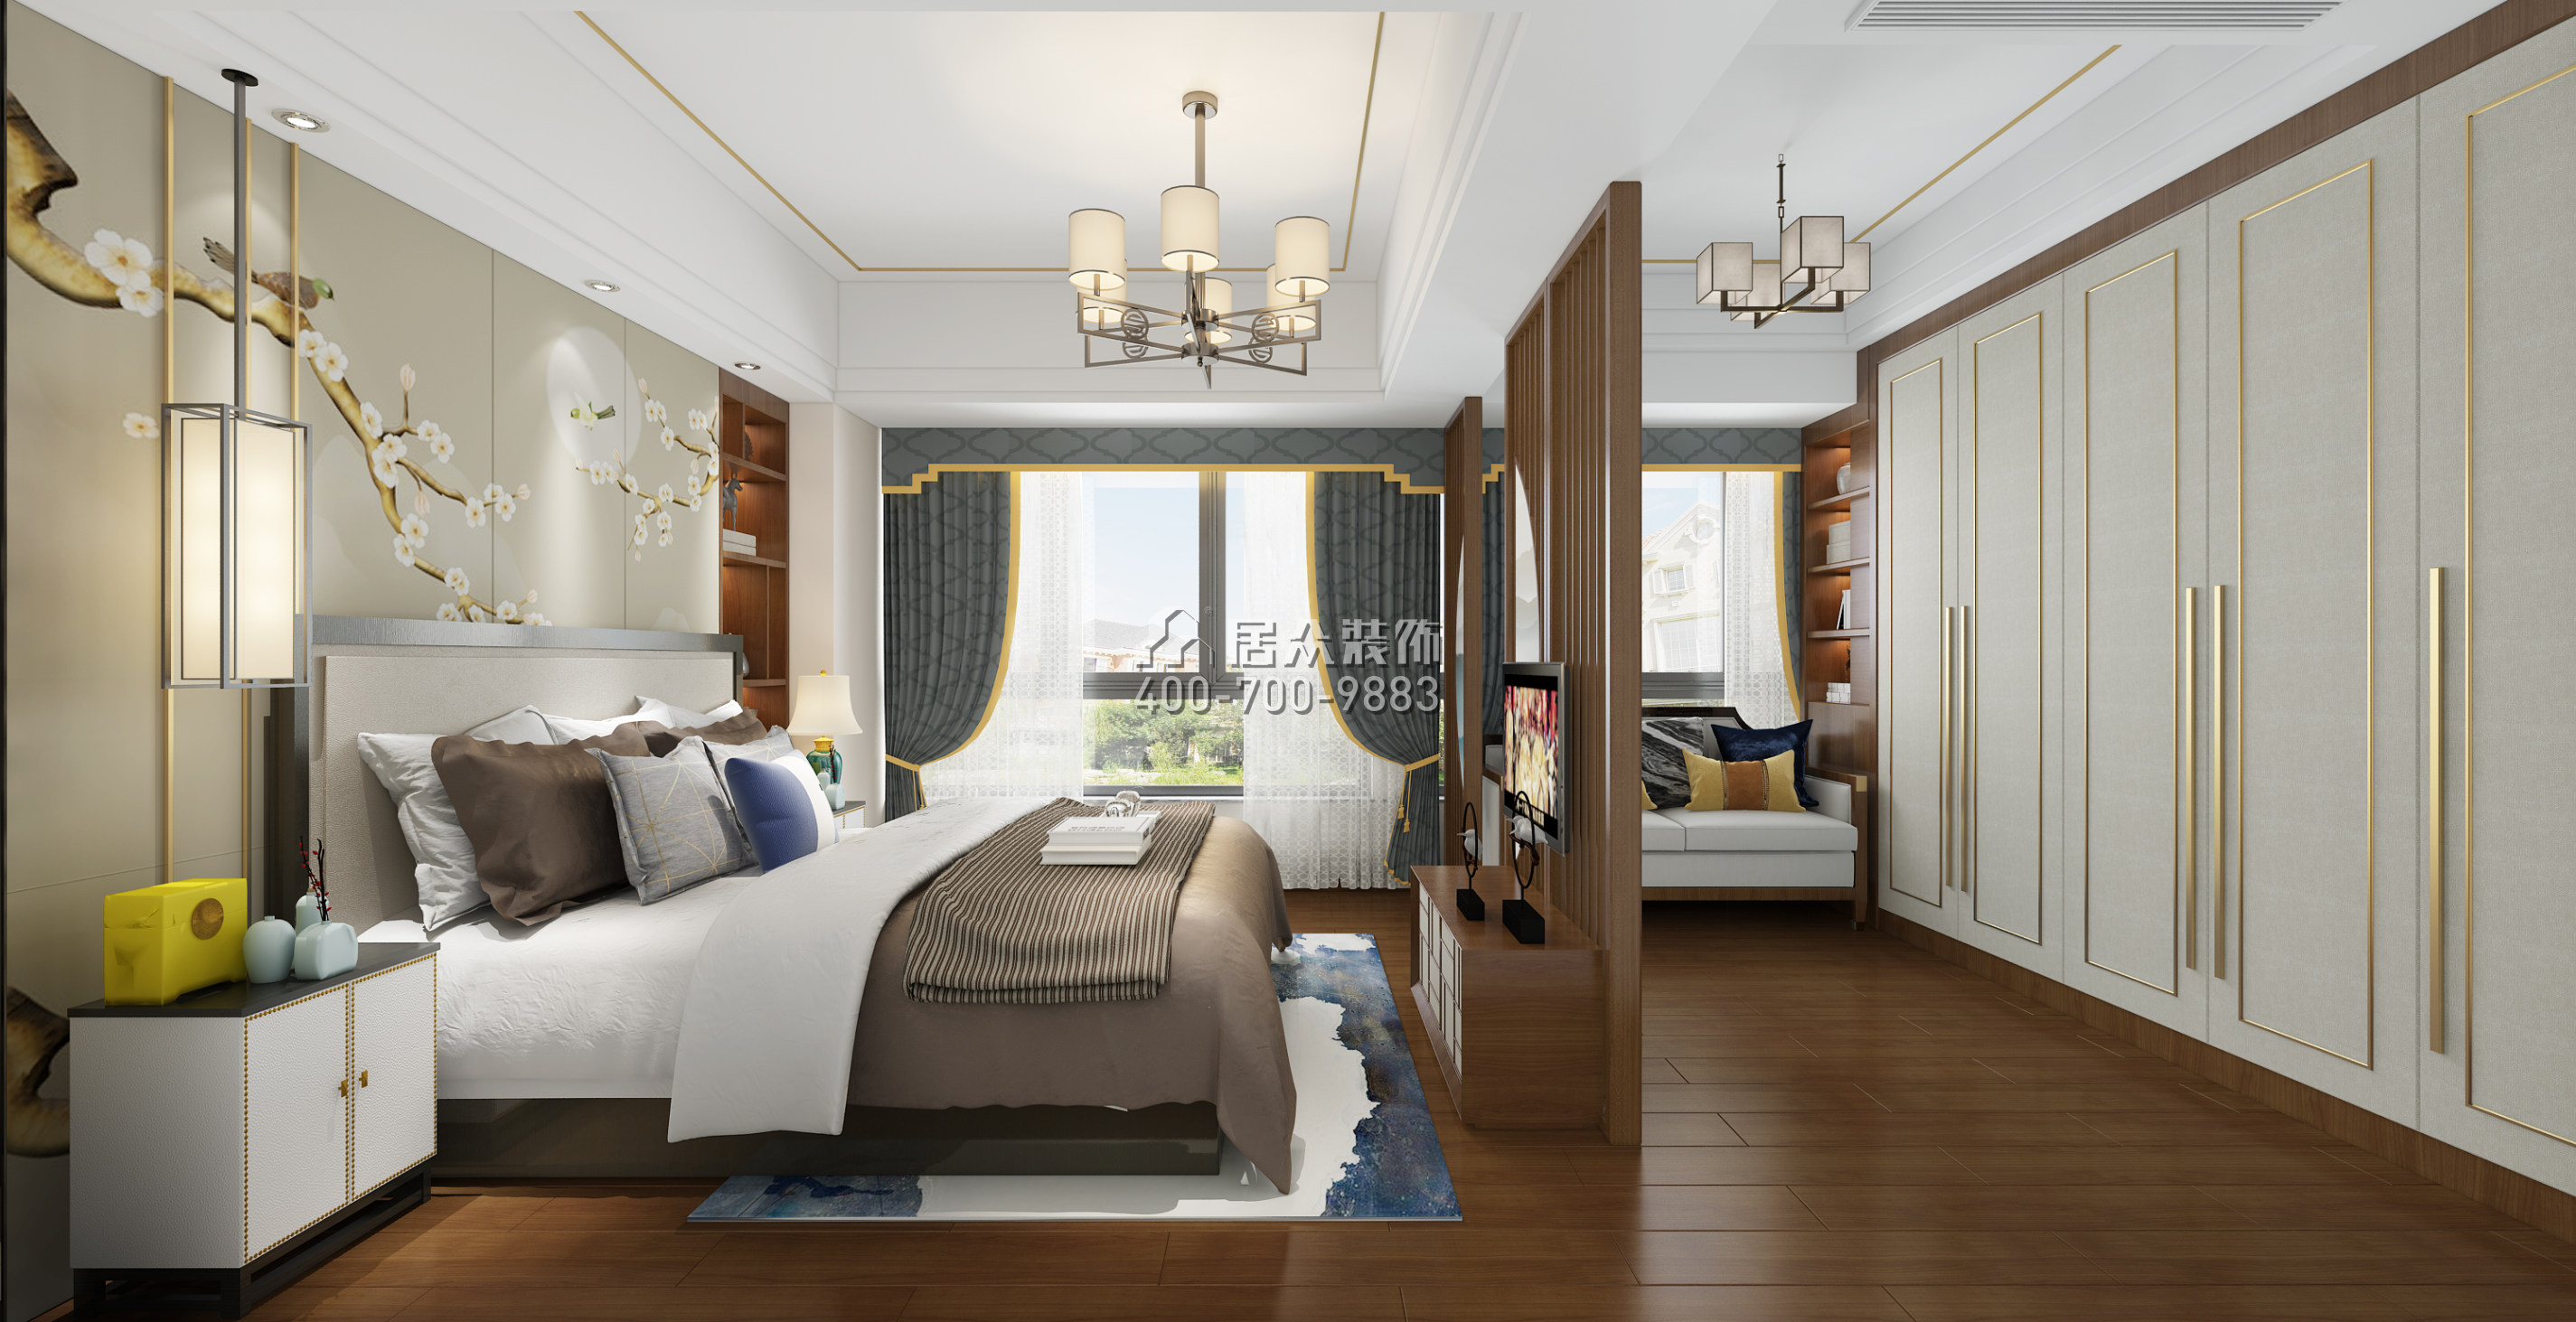 阳光天健城143平方米中式风格平层户型卧室装修效果图